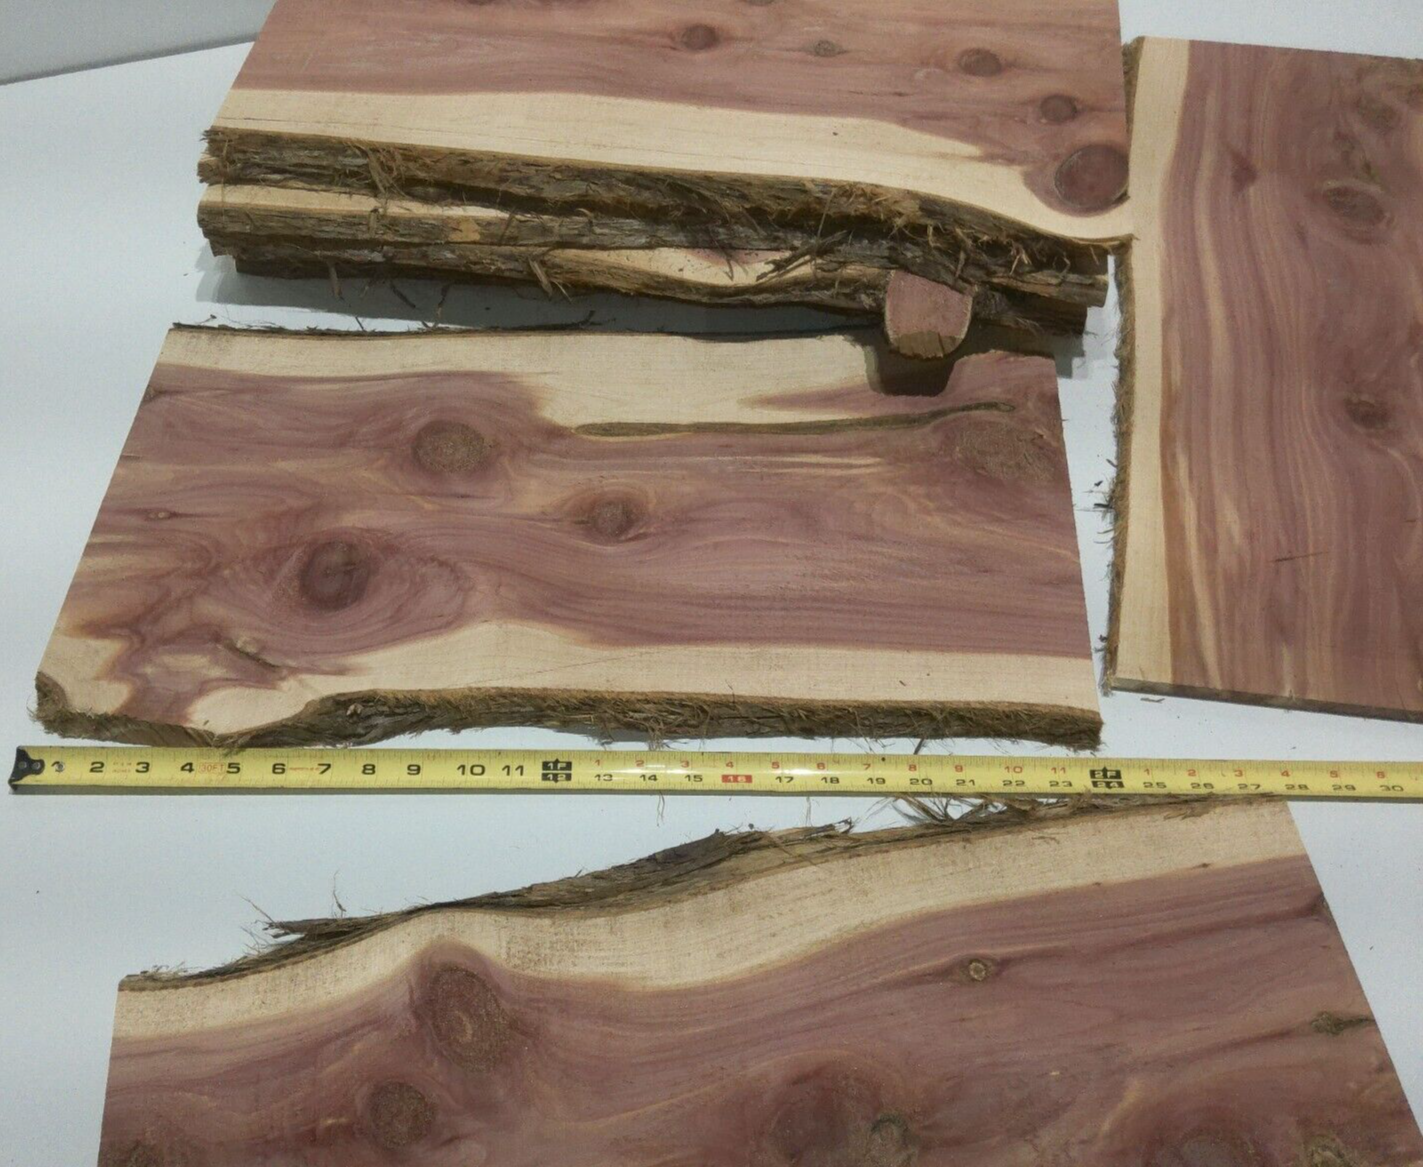 1 Milled Kiln Dried Eastern Red Cedar Lumber SLAB 24" X 8-12" X 1/2" RARE Our Wood Shop - фотография #8